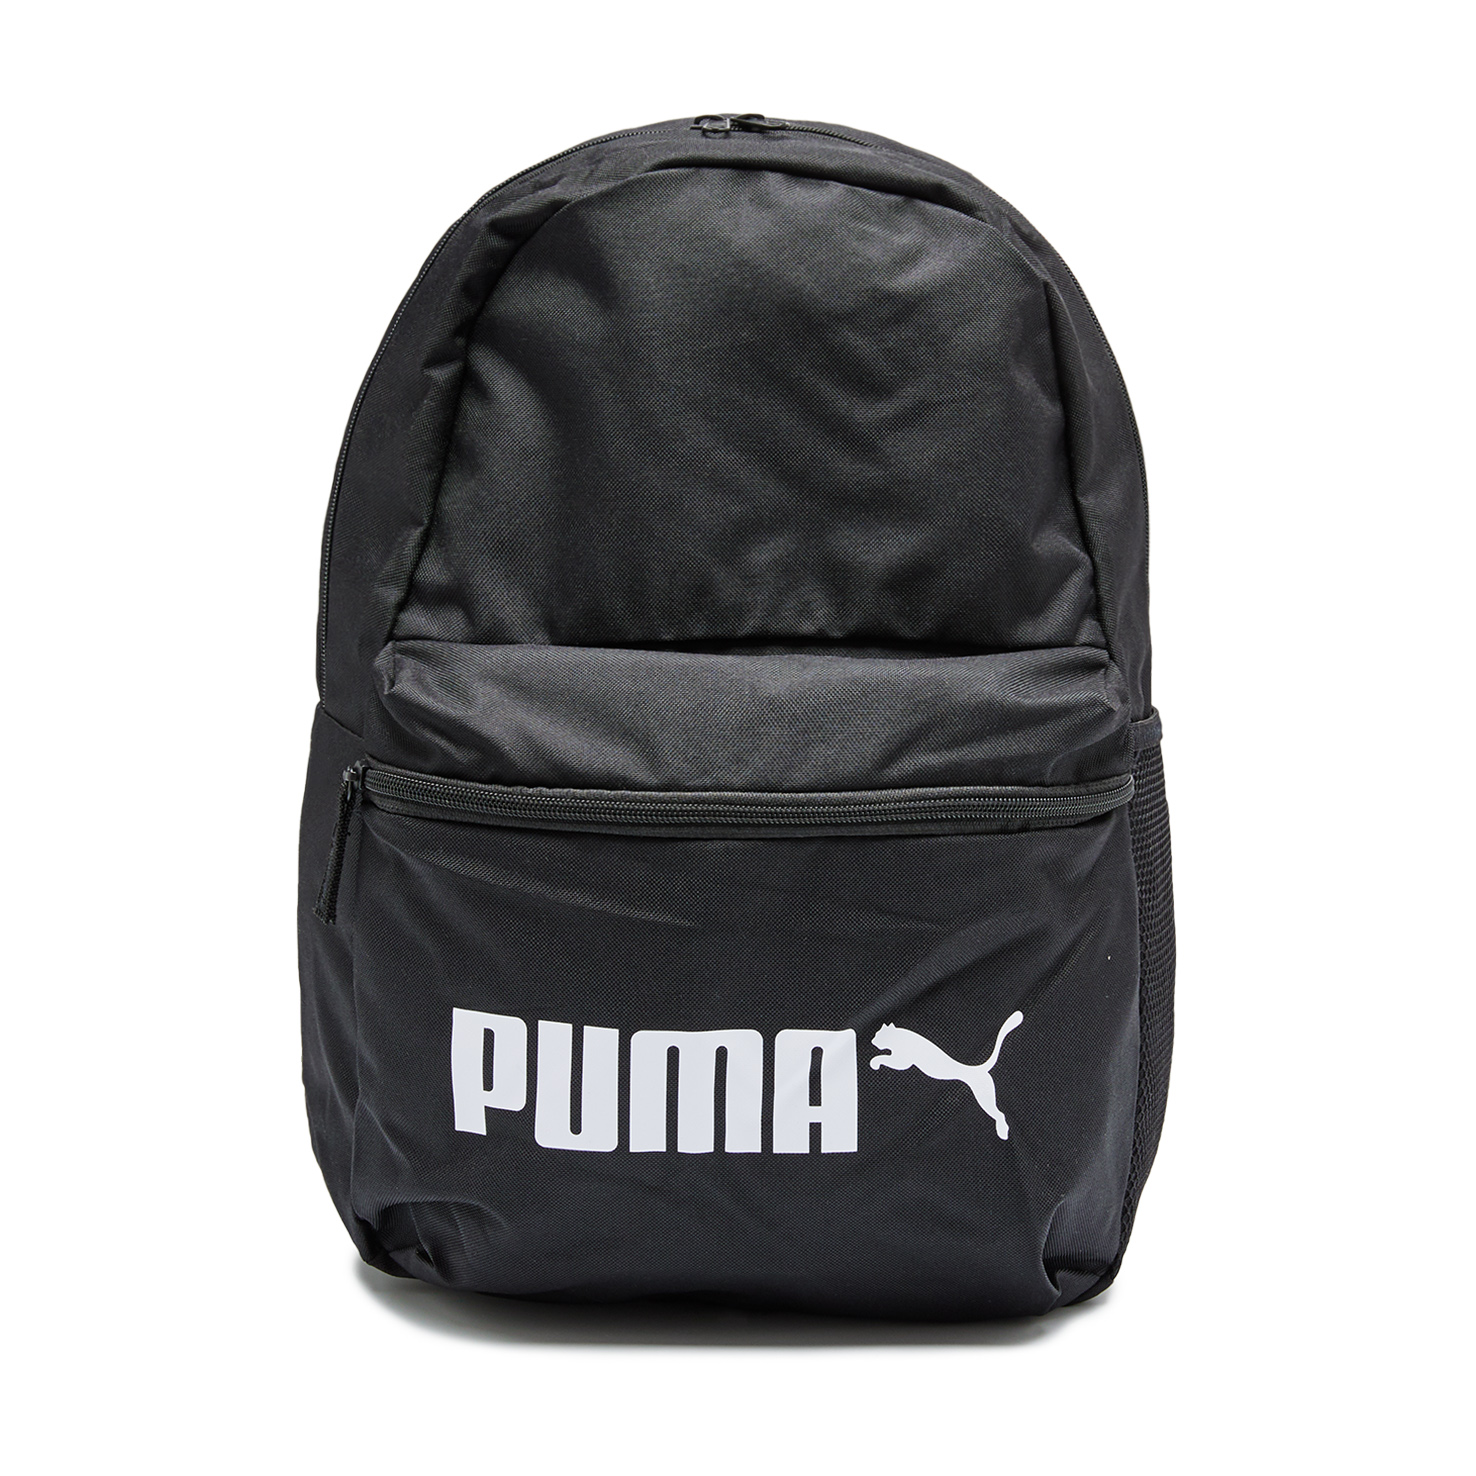 Phase Backpack No. 2 PUMA черного цвета